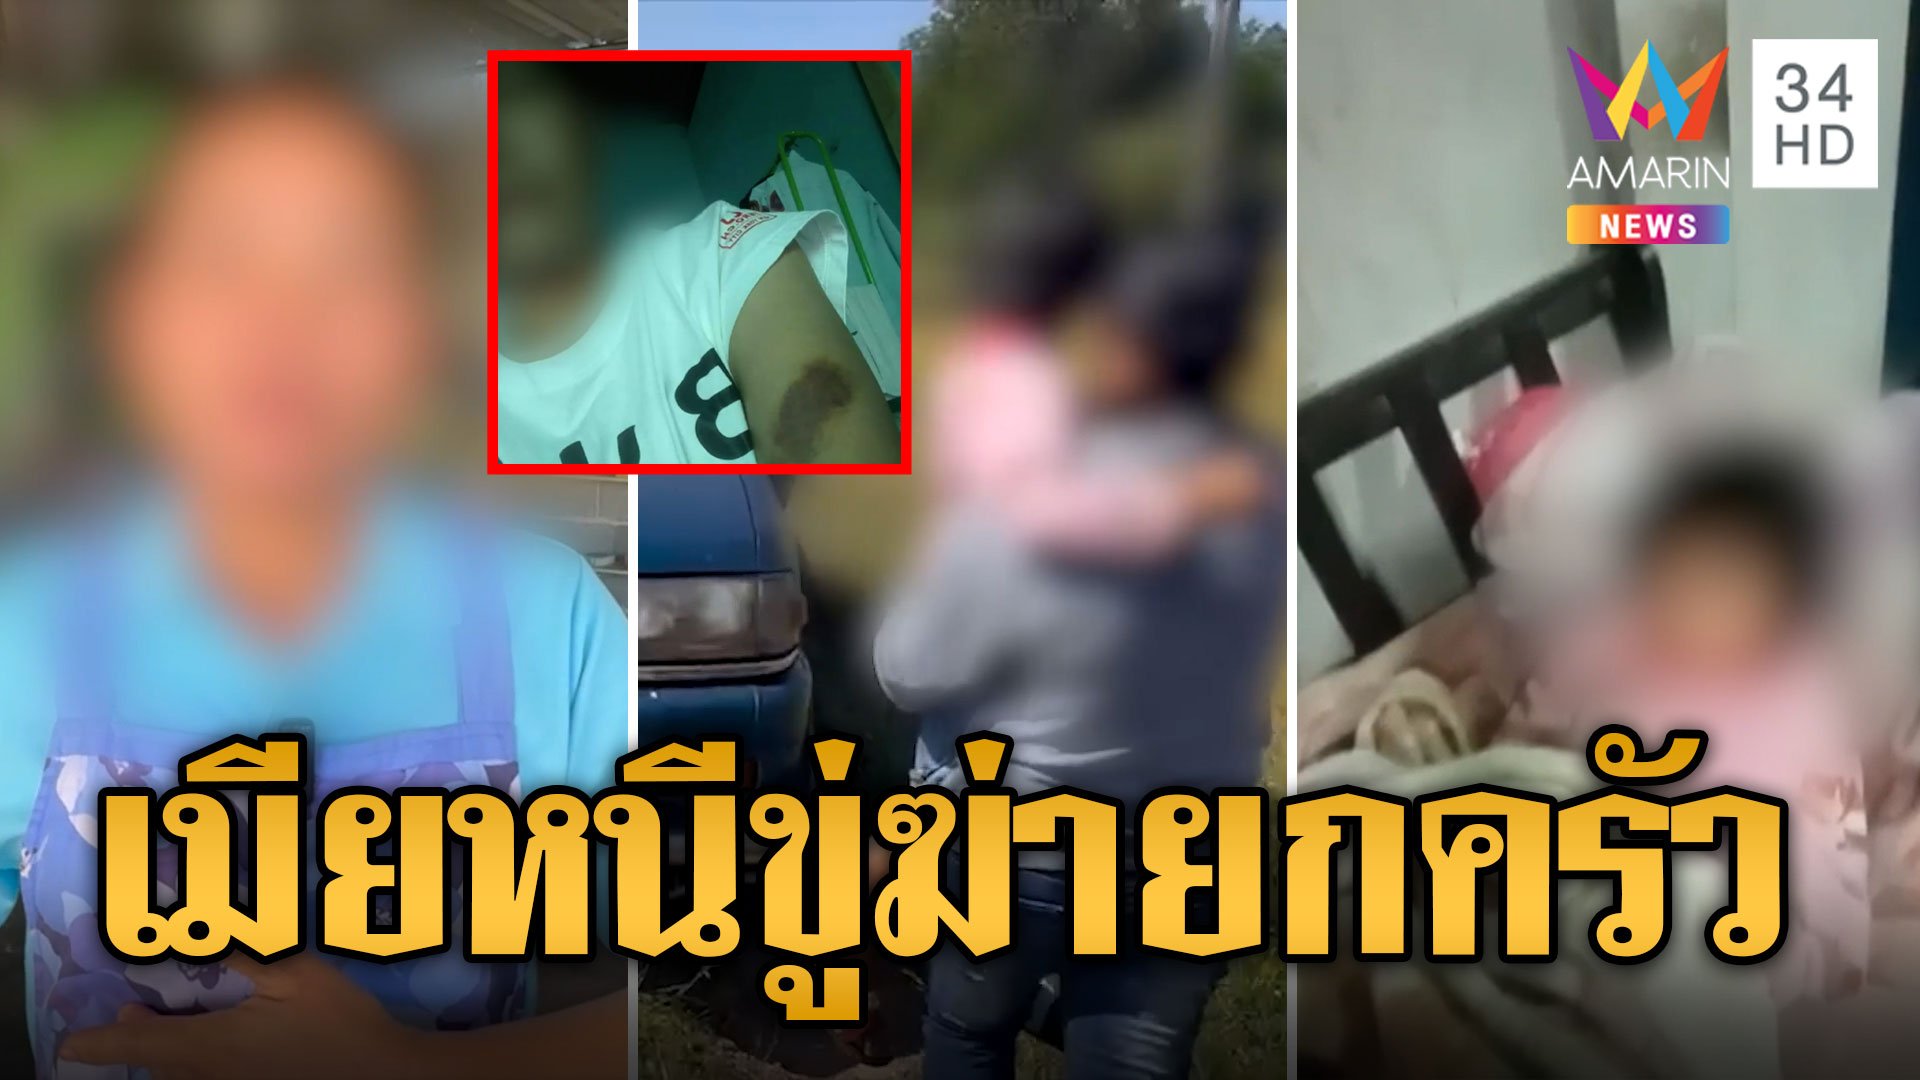 ผัวกระทืบเมียน่วมหนีออกจากบ้าน จับลูกเป็นตัวประกันขู่ฆ่ายกครัว  | ข่าวเที่ยงอมรินทร์ | 23 พ.ย. 66 | AMARIN TVHD34